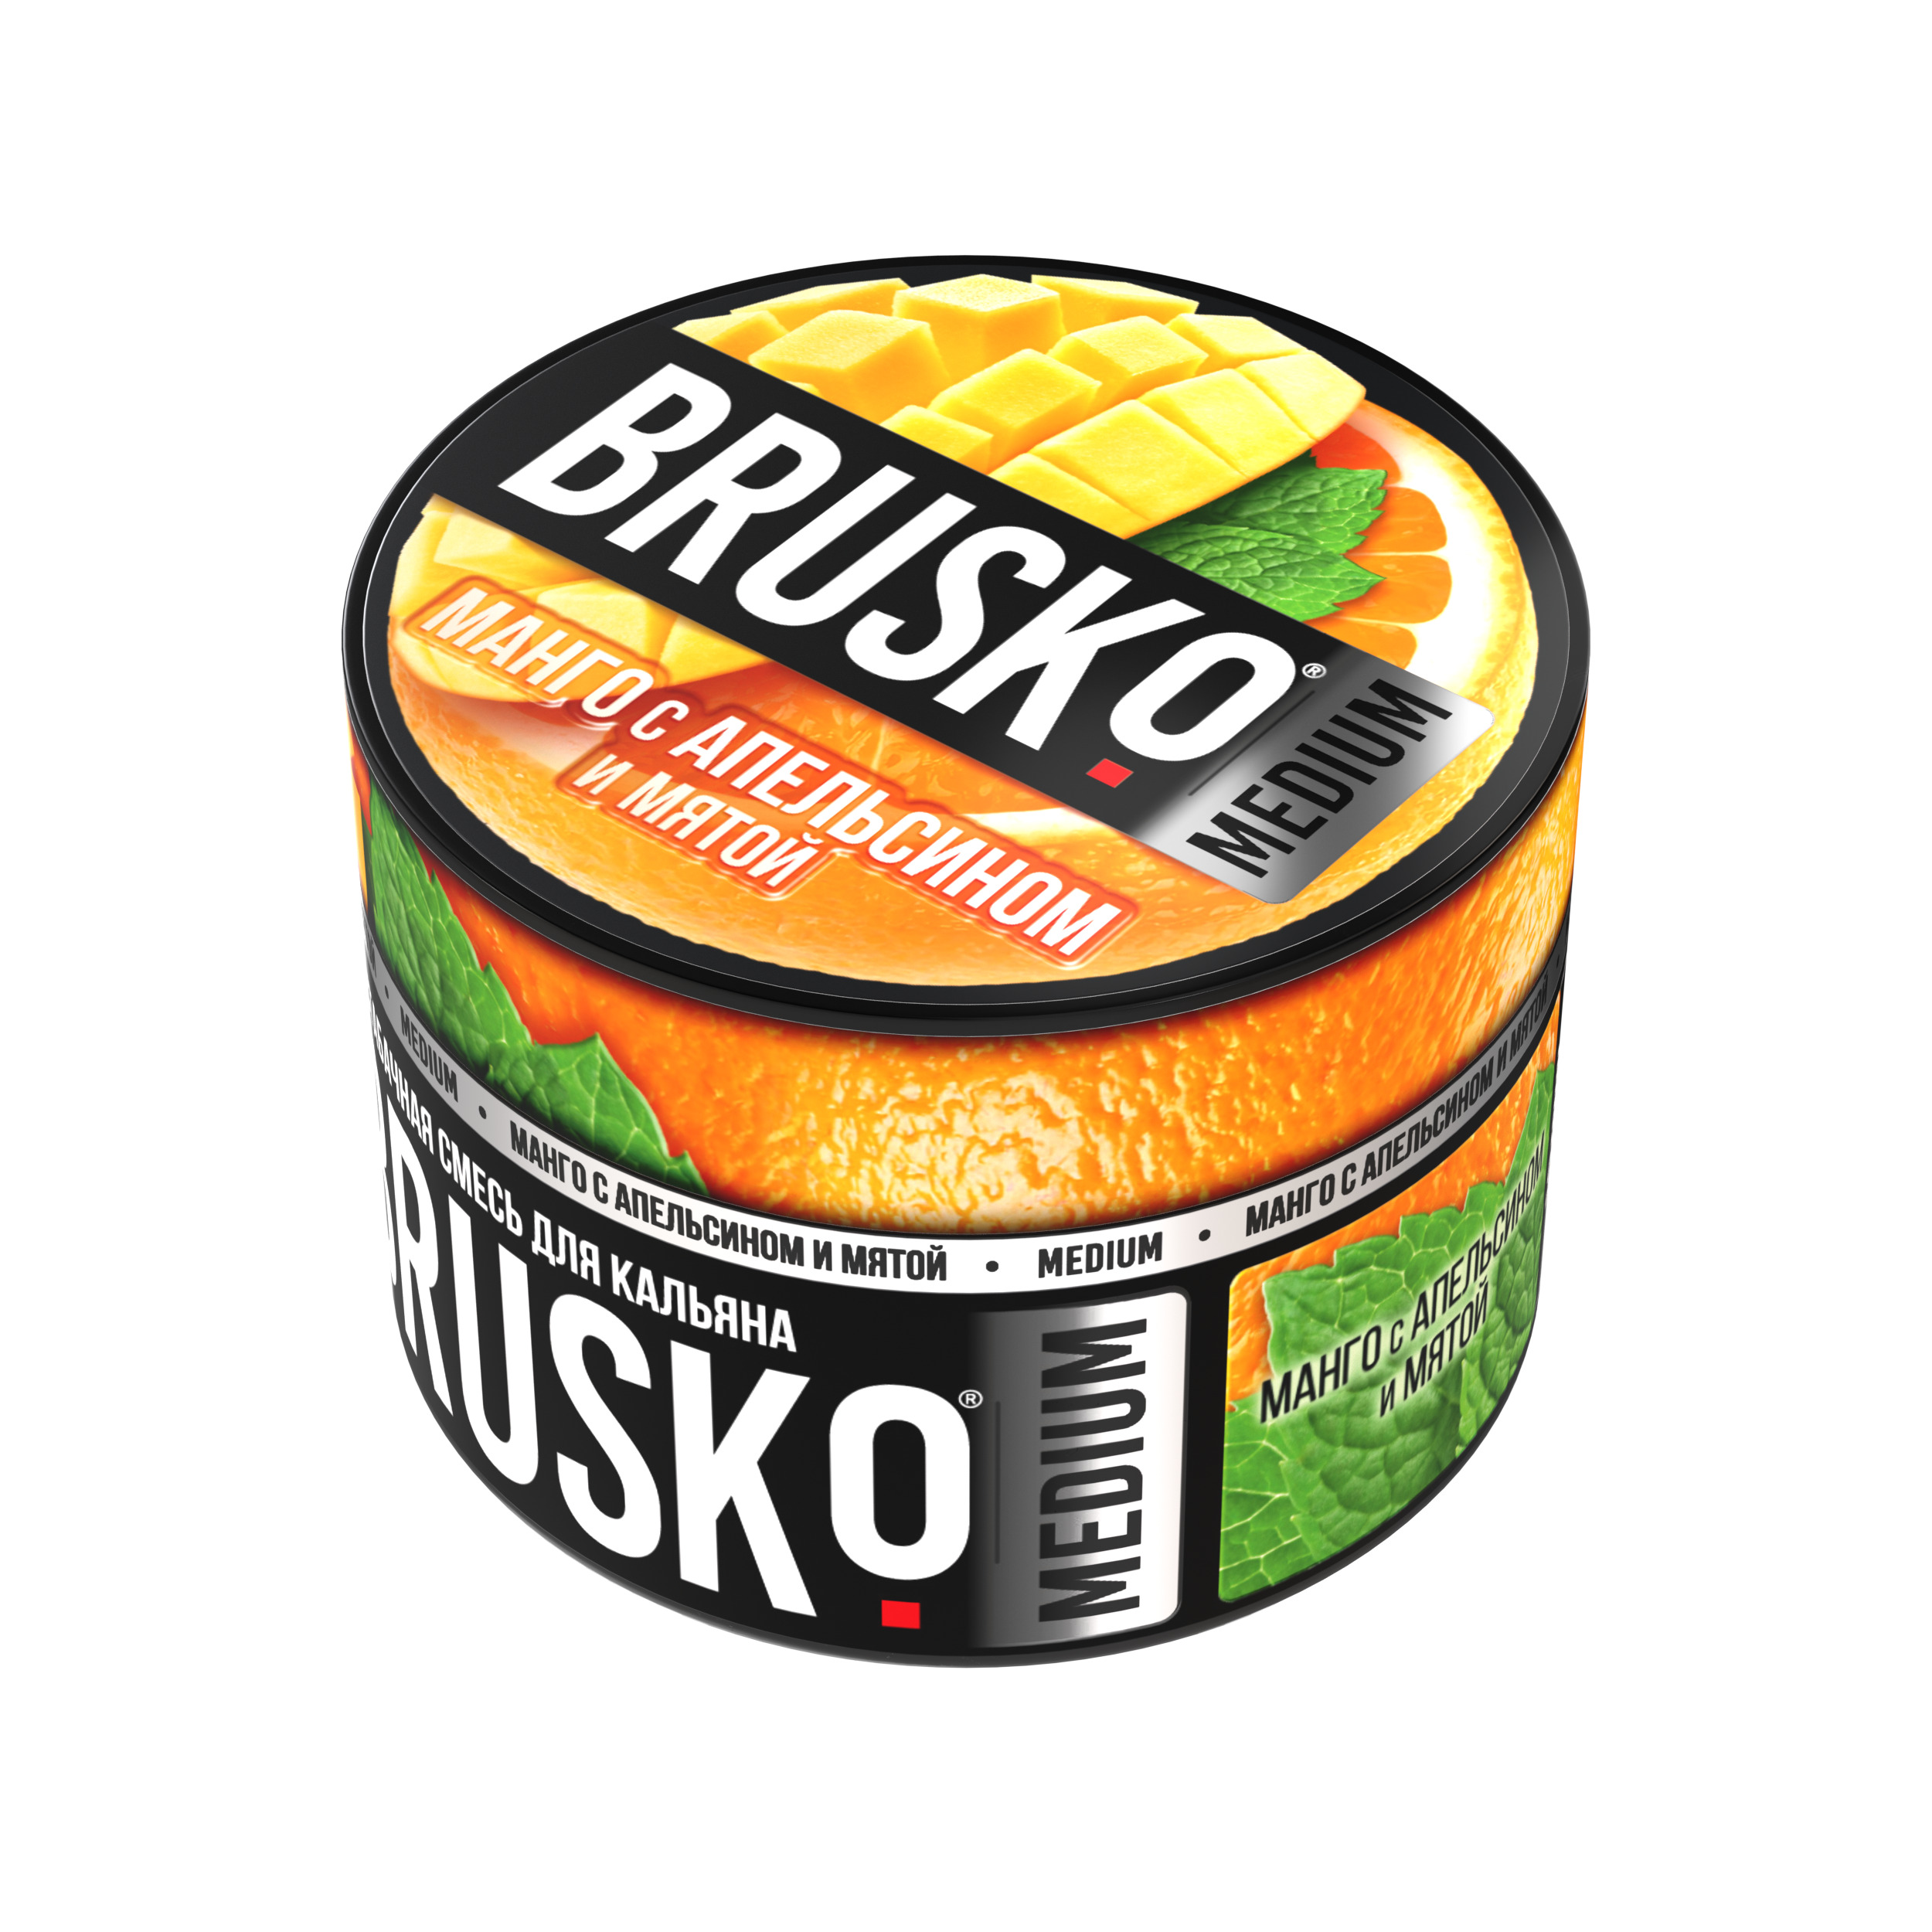 Бестабачная смесь для кальяна BRUSKO, 50 г, Манго с апельсином и мятой, Medium (М)